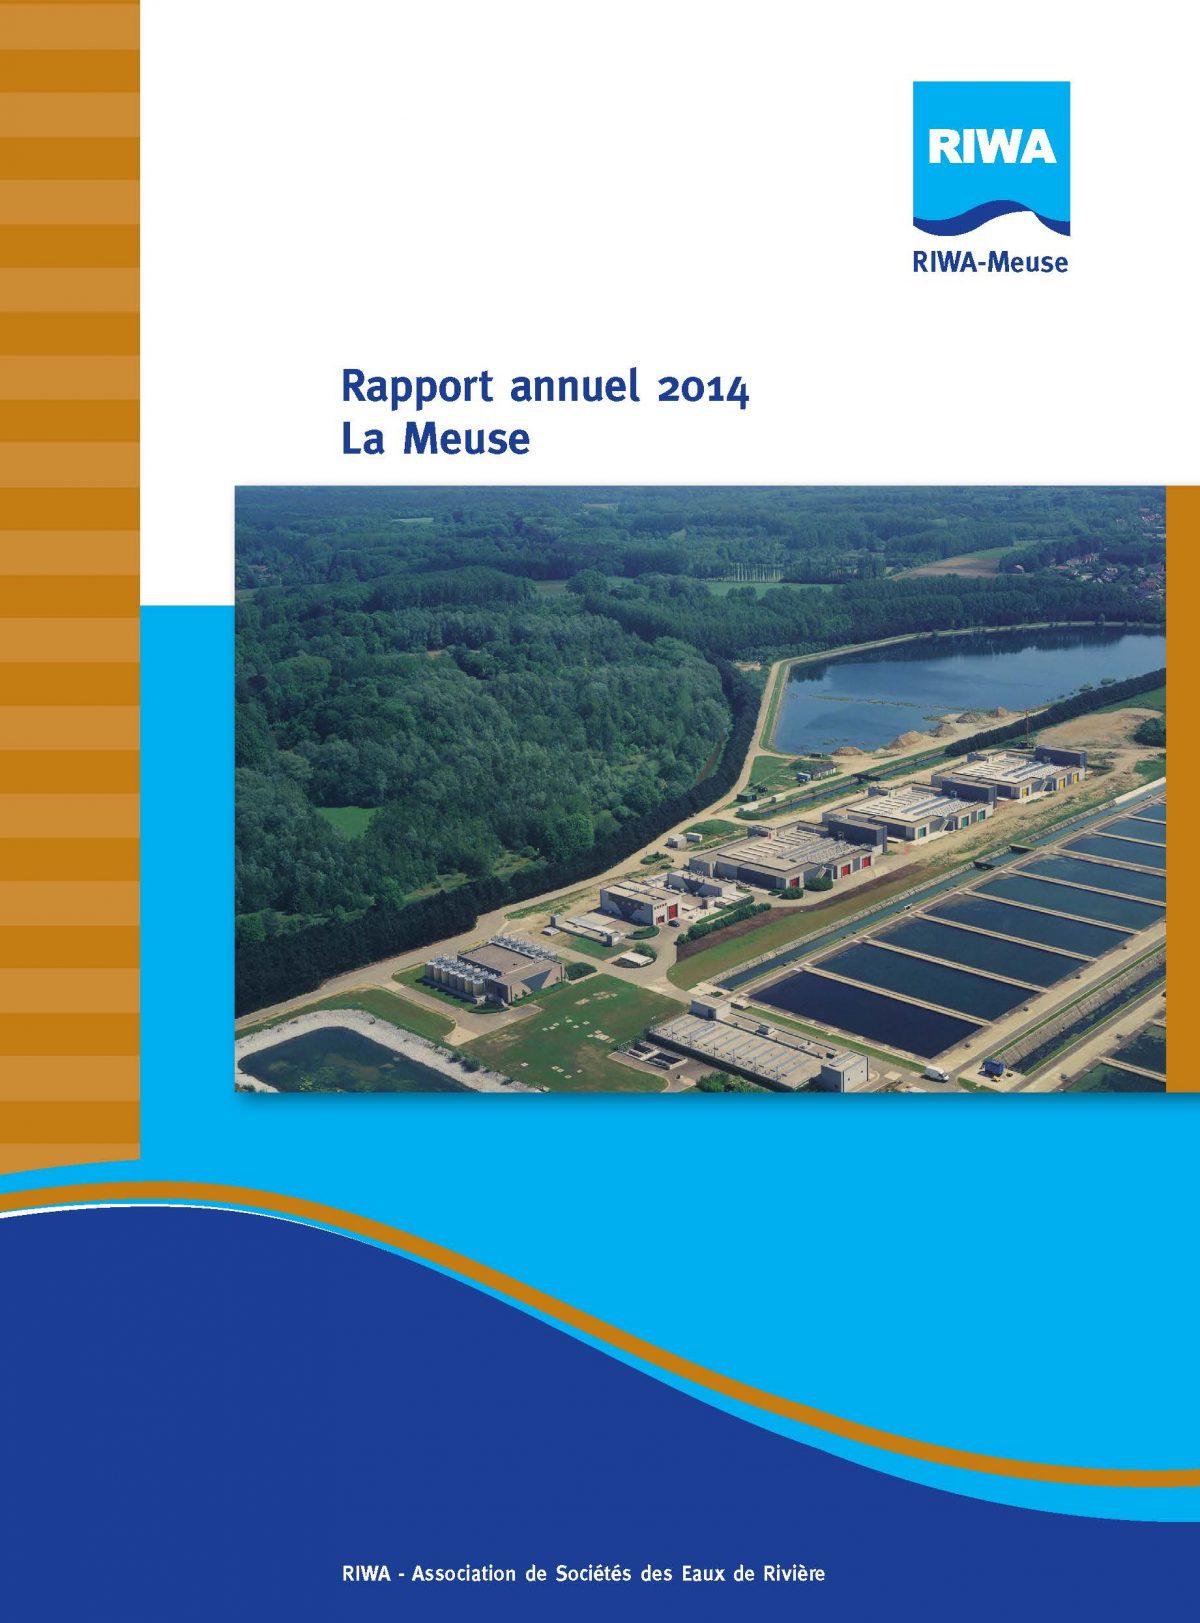 RIWA Rapport Annuel 2014 La Meuse